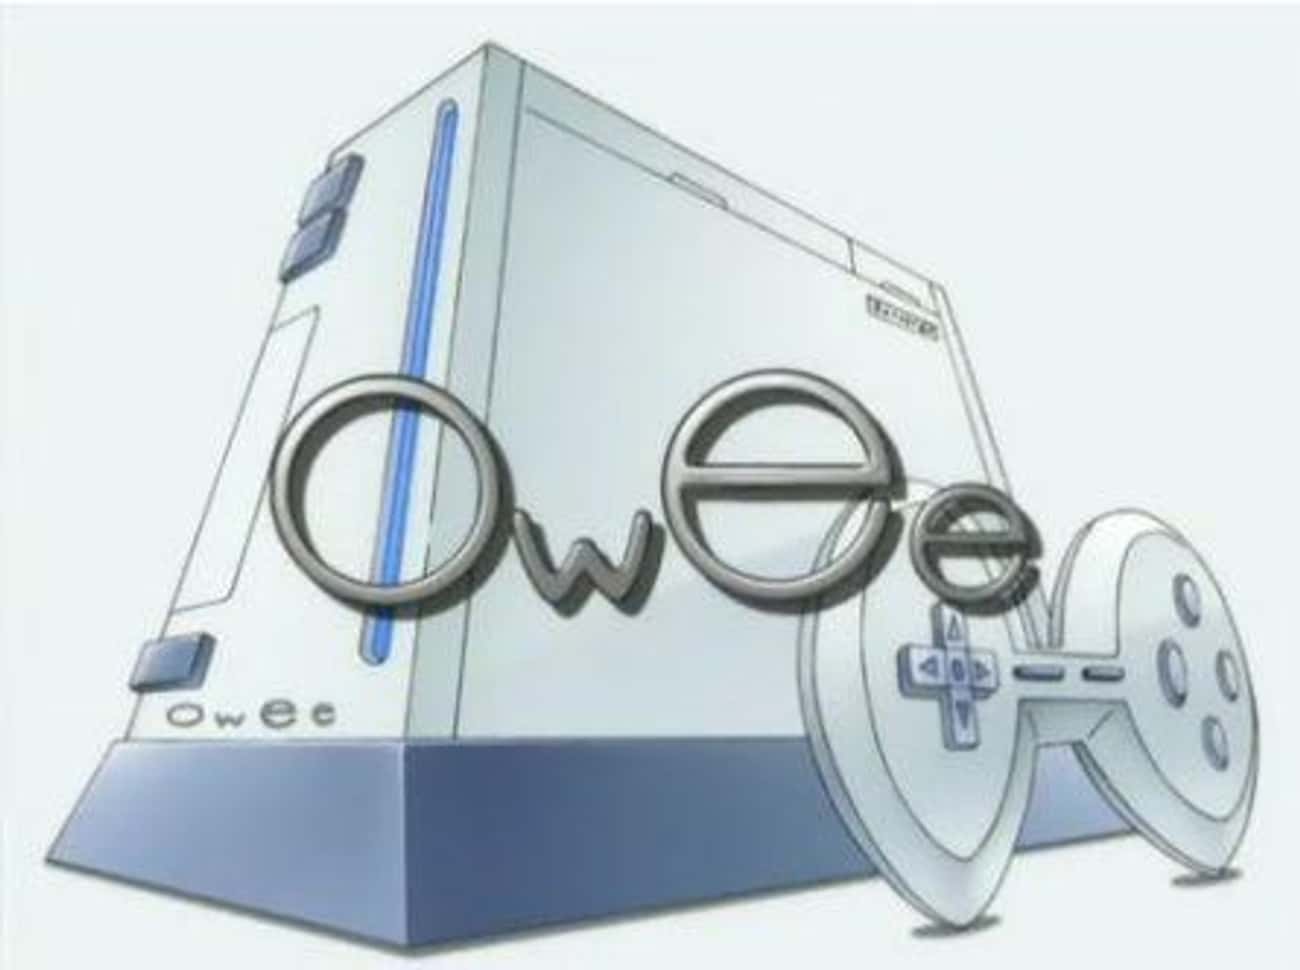 Owee (Wii)